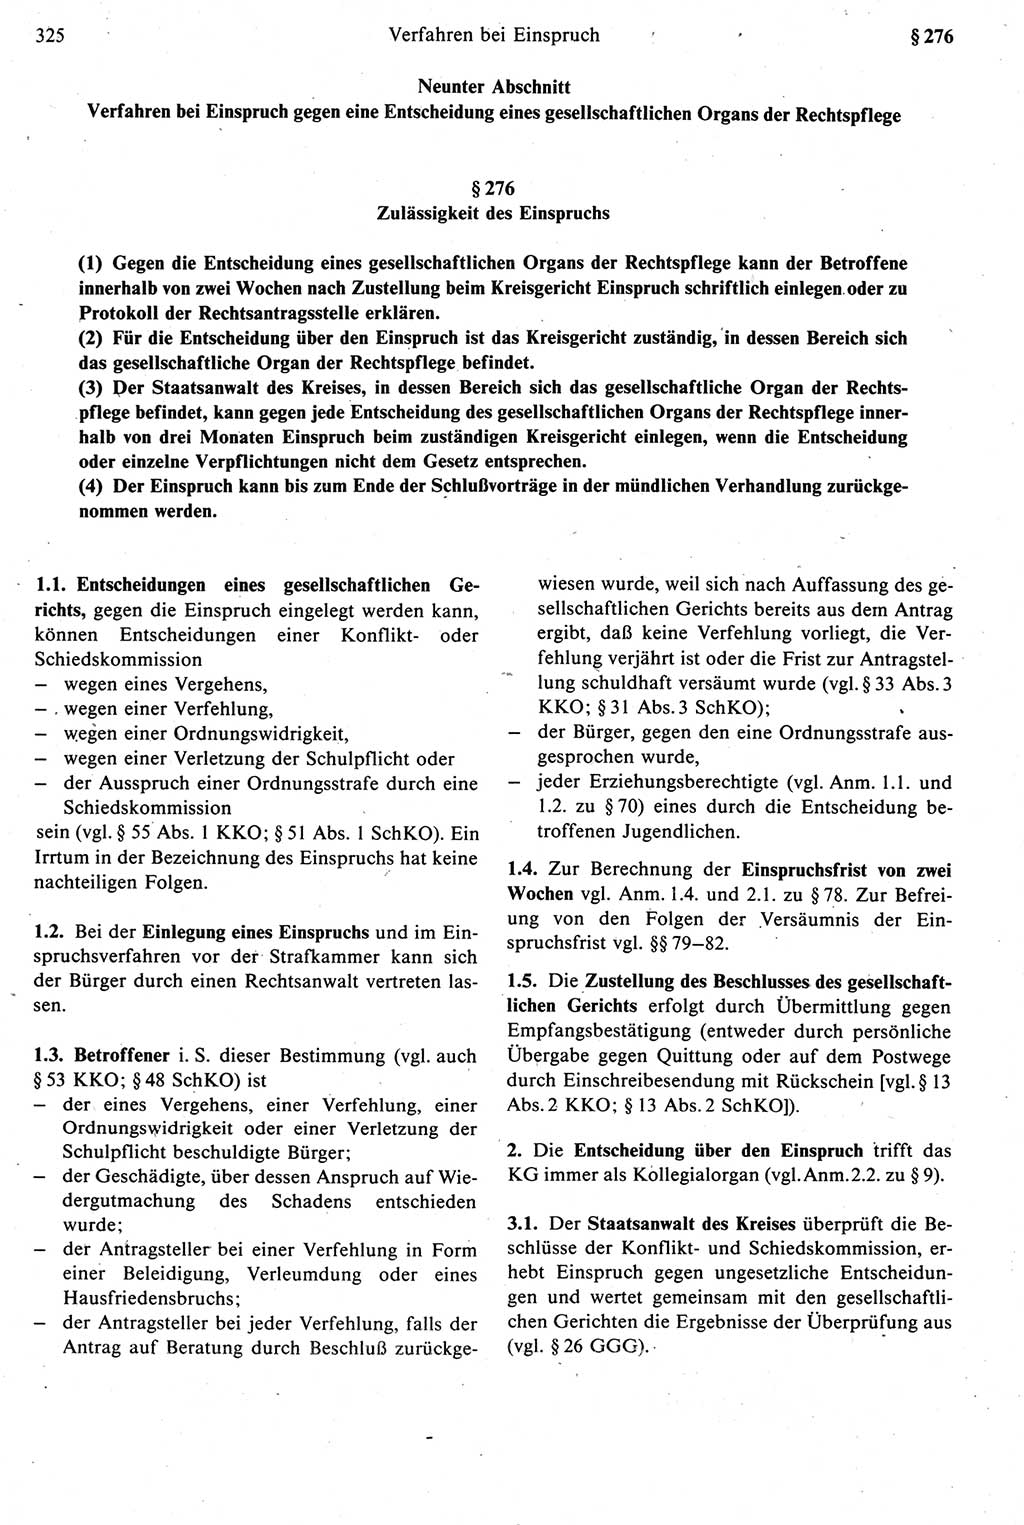 Strafprozeßrecht der DDR [Deutsche Demokratische Republik], Kommentar zur Strafprozeßordnung (StPO) 1987, Seite 325 (Strafprozeßr. DDR Komm. StPO 1987, S. 325)